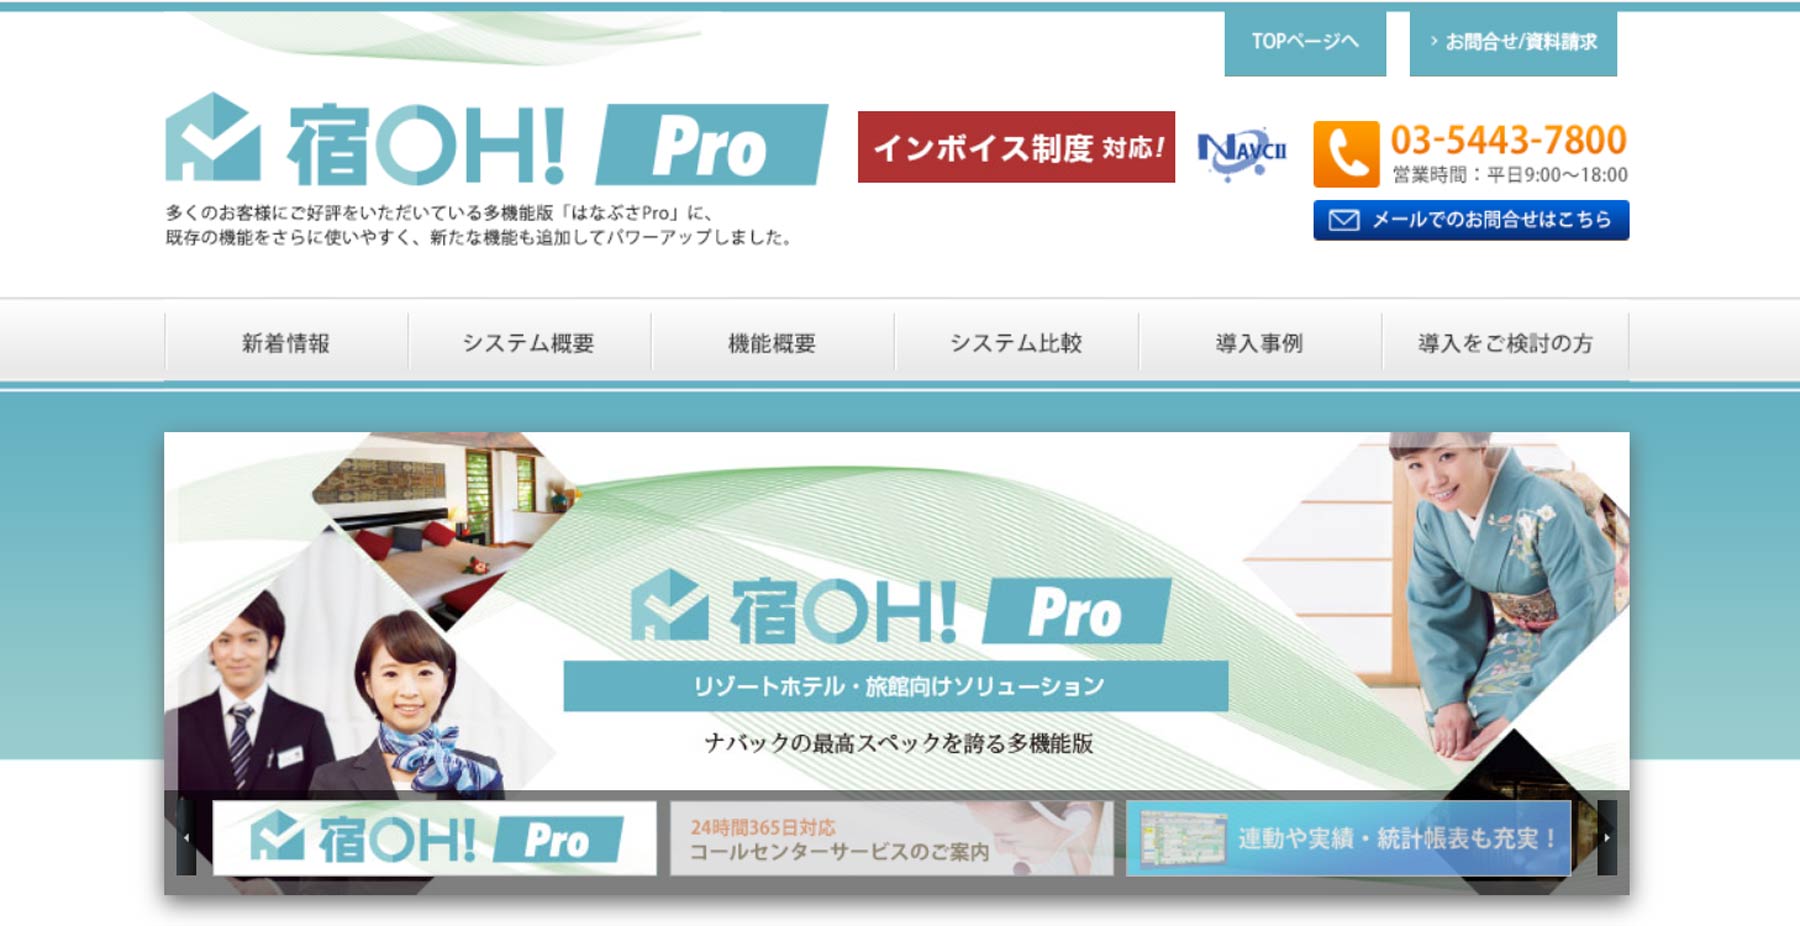 宿OHPro公式Webサイト